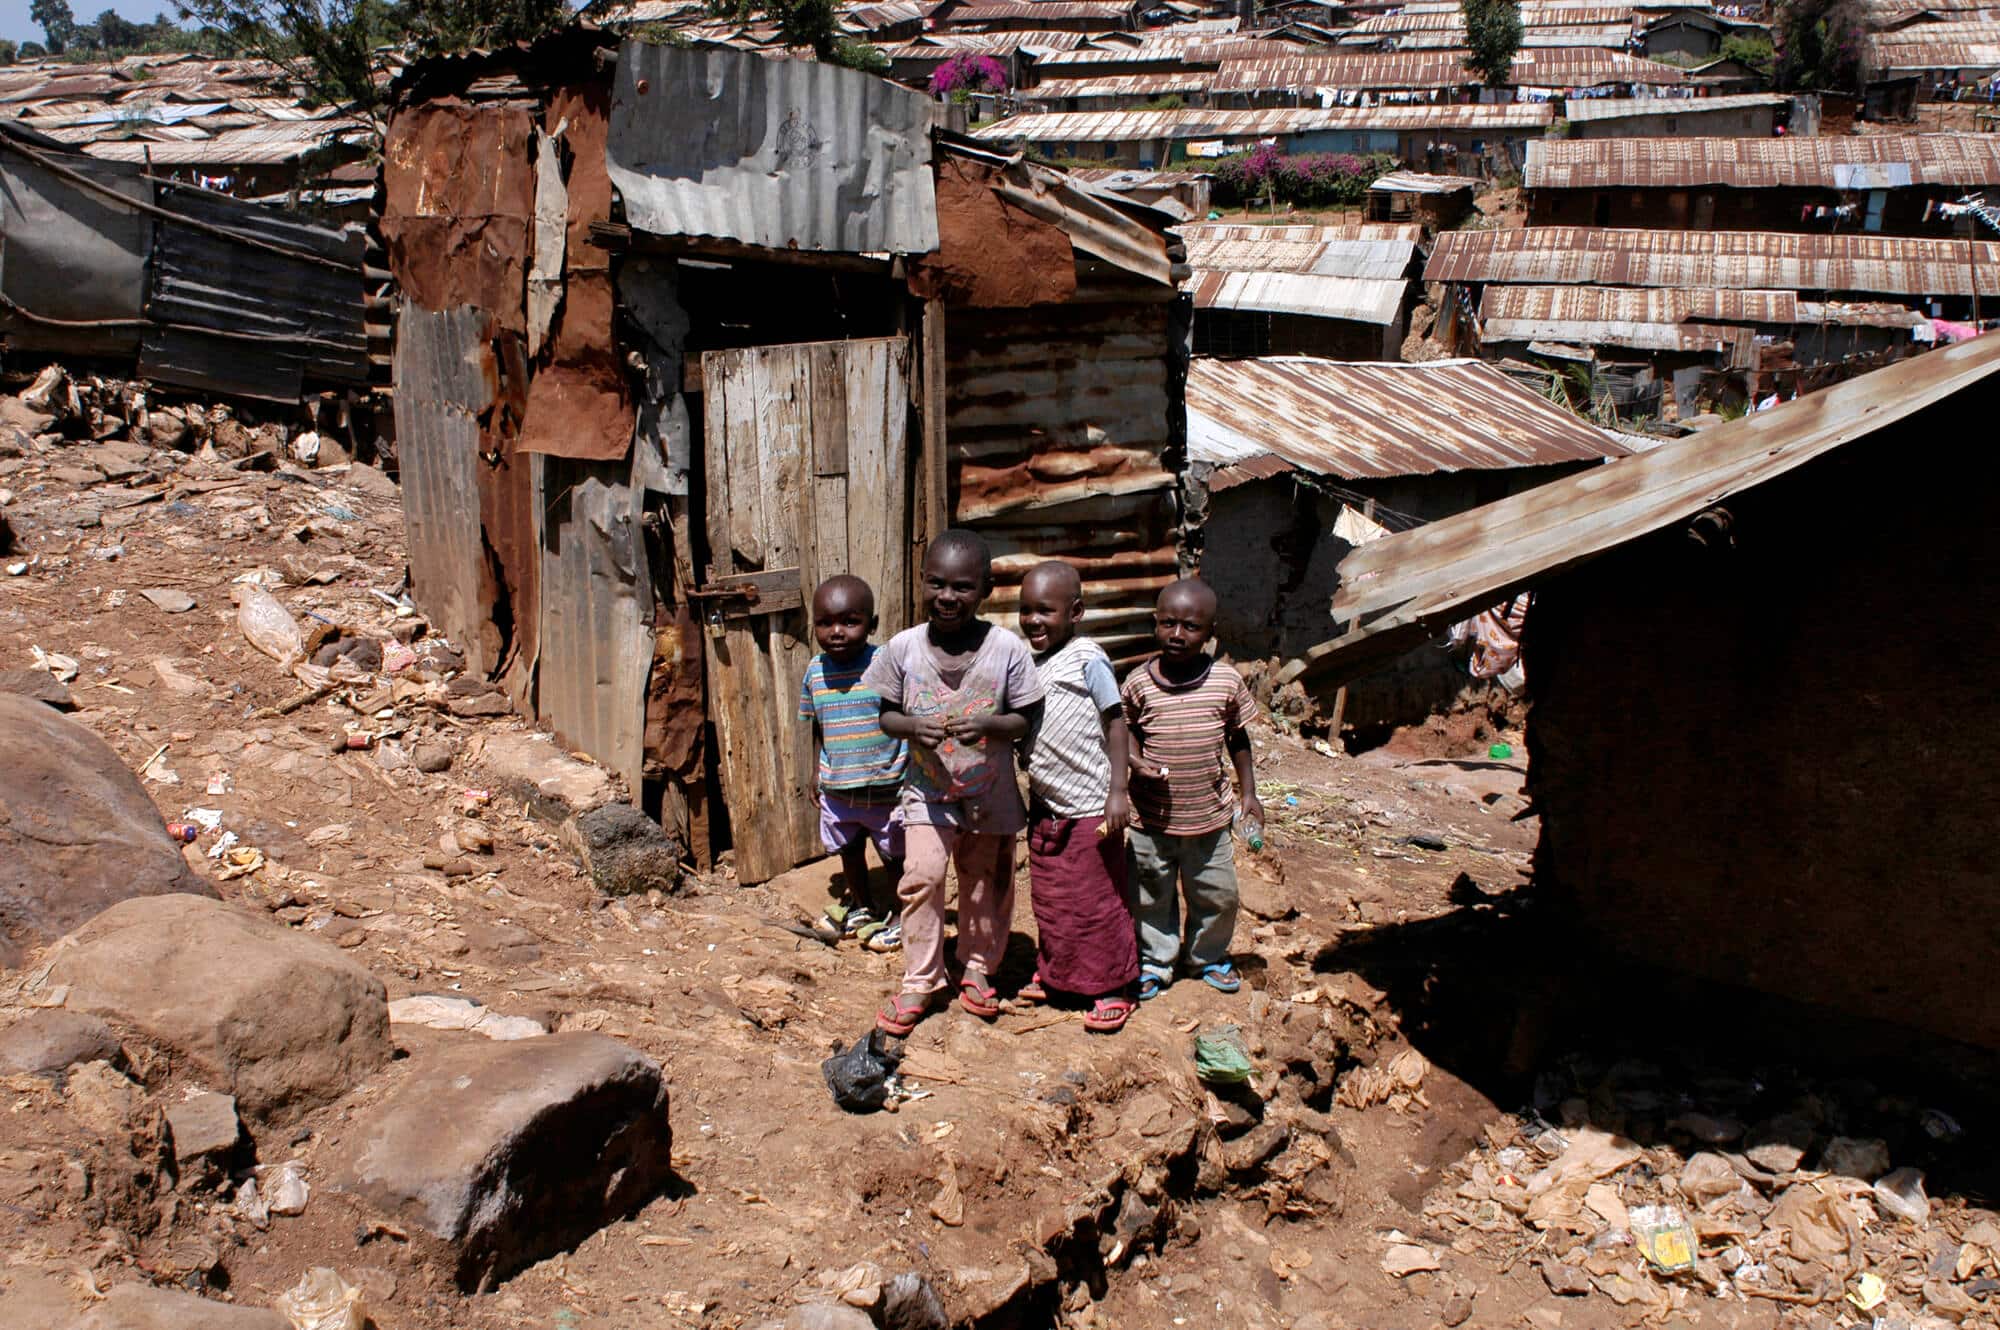 أطفال في أحد الأحياء الفقيرة في نيروبي، كينيا. الرسم التوضيحي: موقع Depositphotos.com